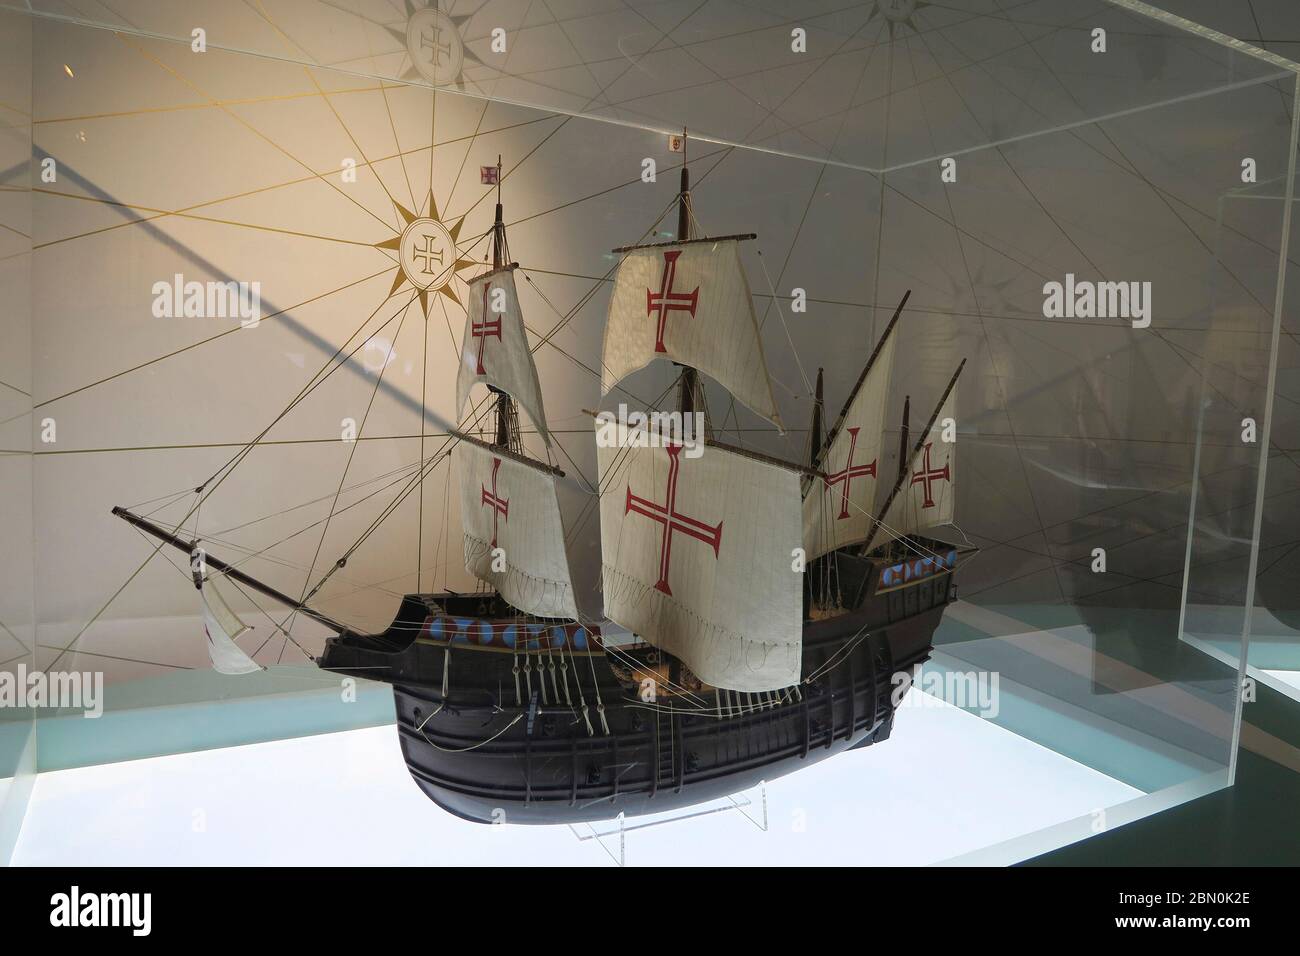 Miniatura réplica de un barco Nau en el museo interactivo World of Discoveries dedicado a los descubrimientos portugueses en Oporto, Portugal Foto de stock